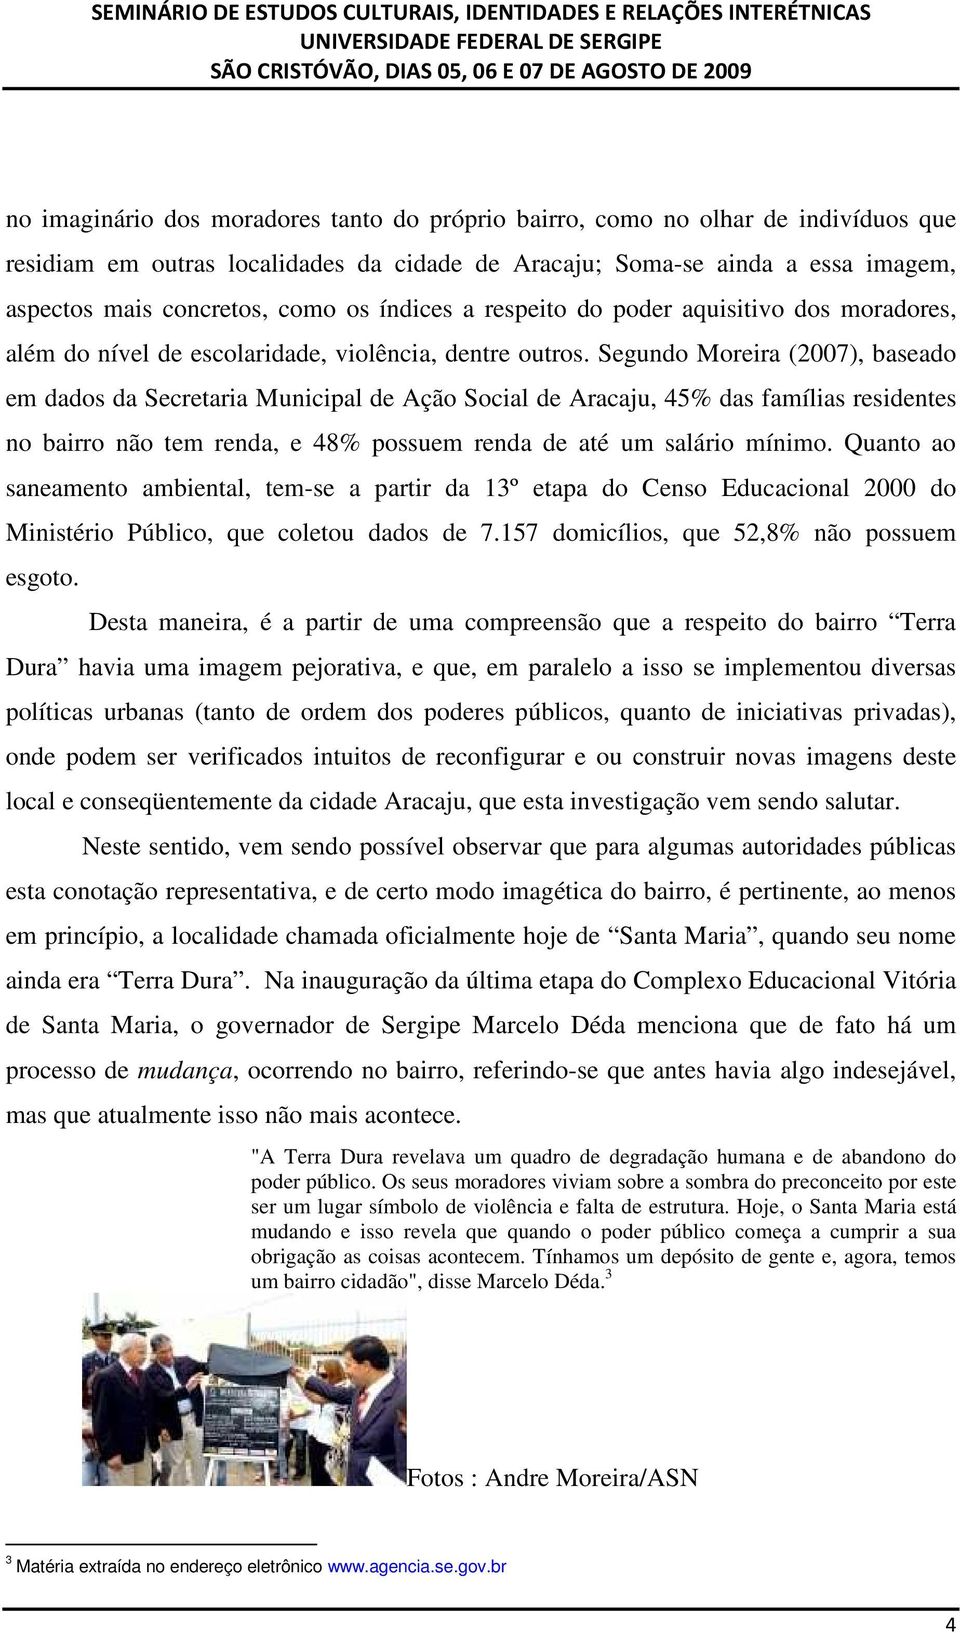 Segundo Moreira (2007), baseado em dados da Secretaria Municipal de Ação Social de Aracaju, 45% das famílias residentes no bairro não tem renda, e 48% possuem renda de até um salário mínimo.